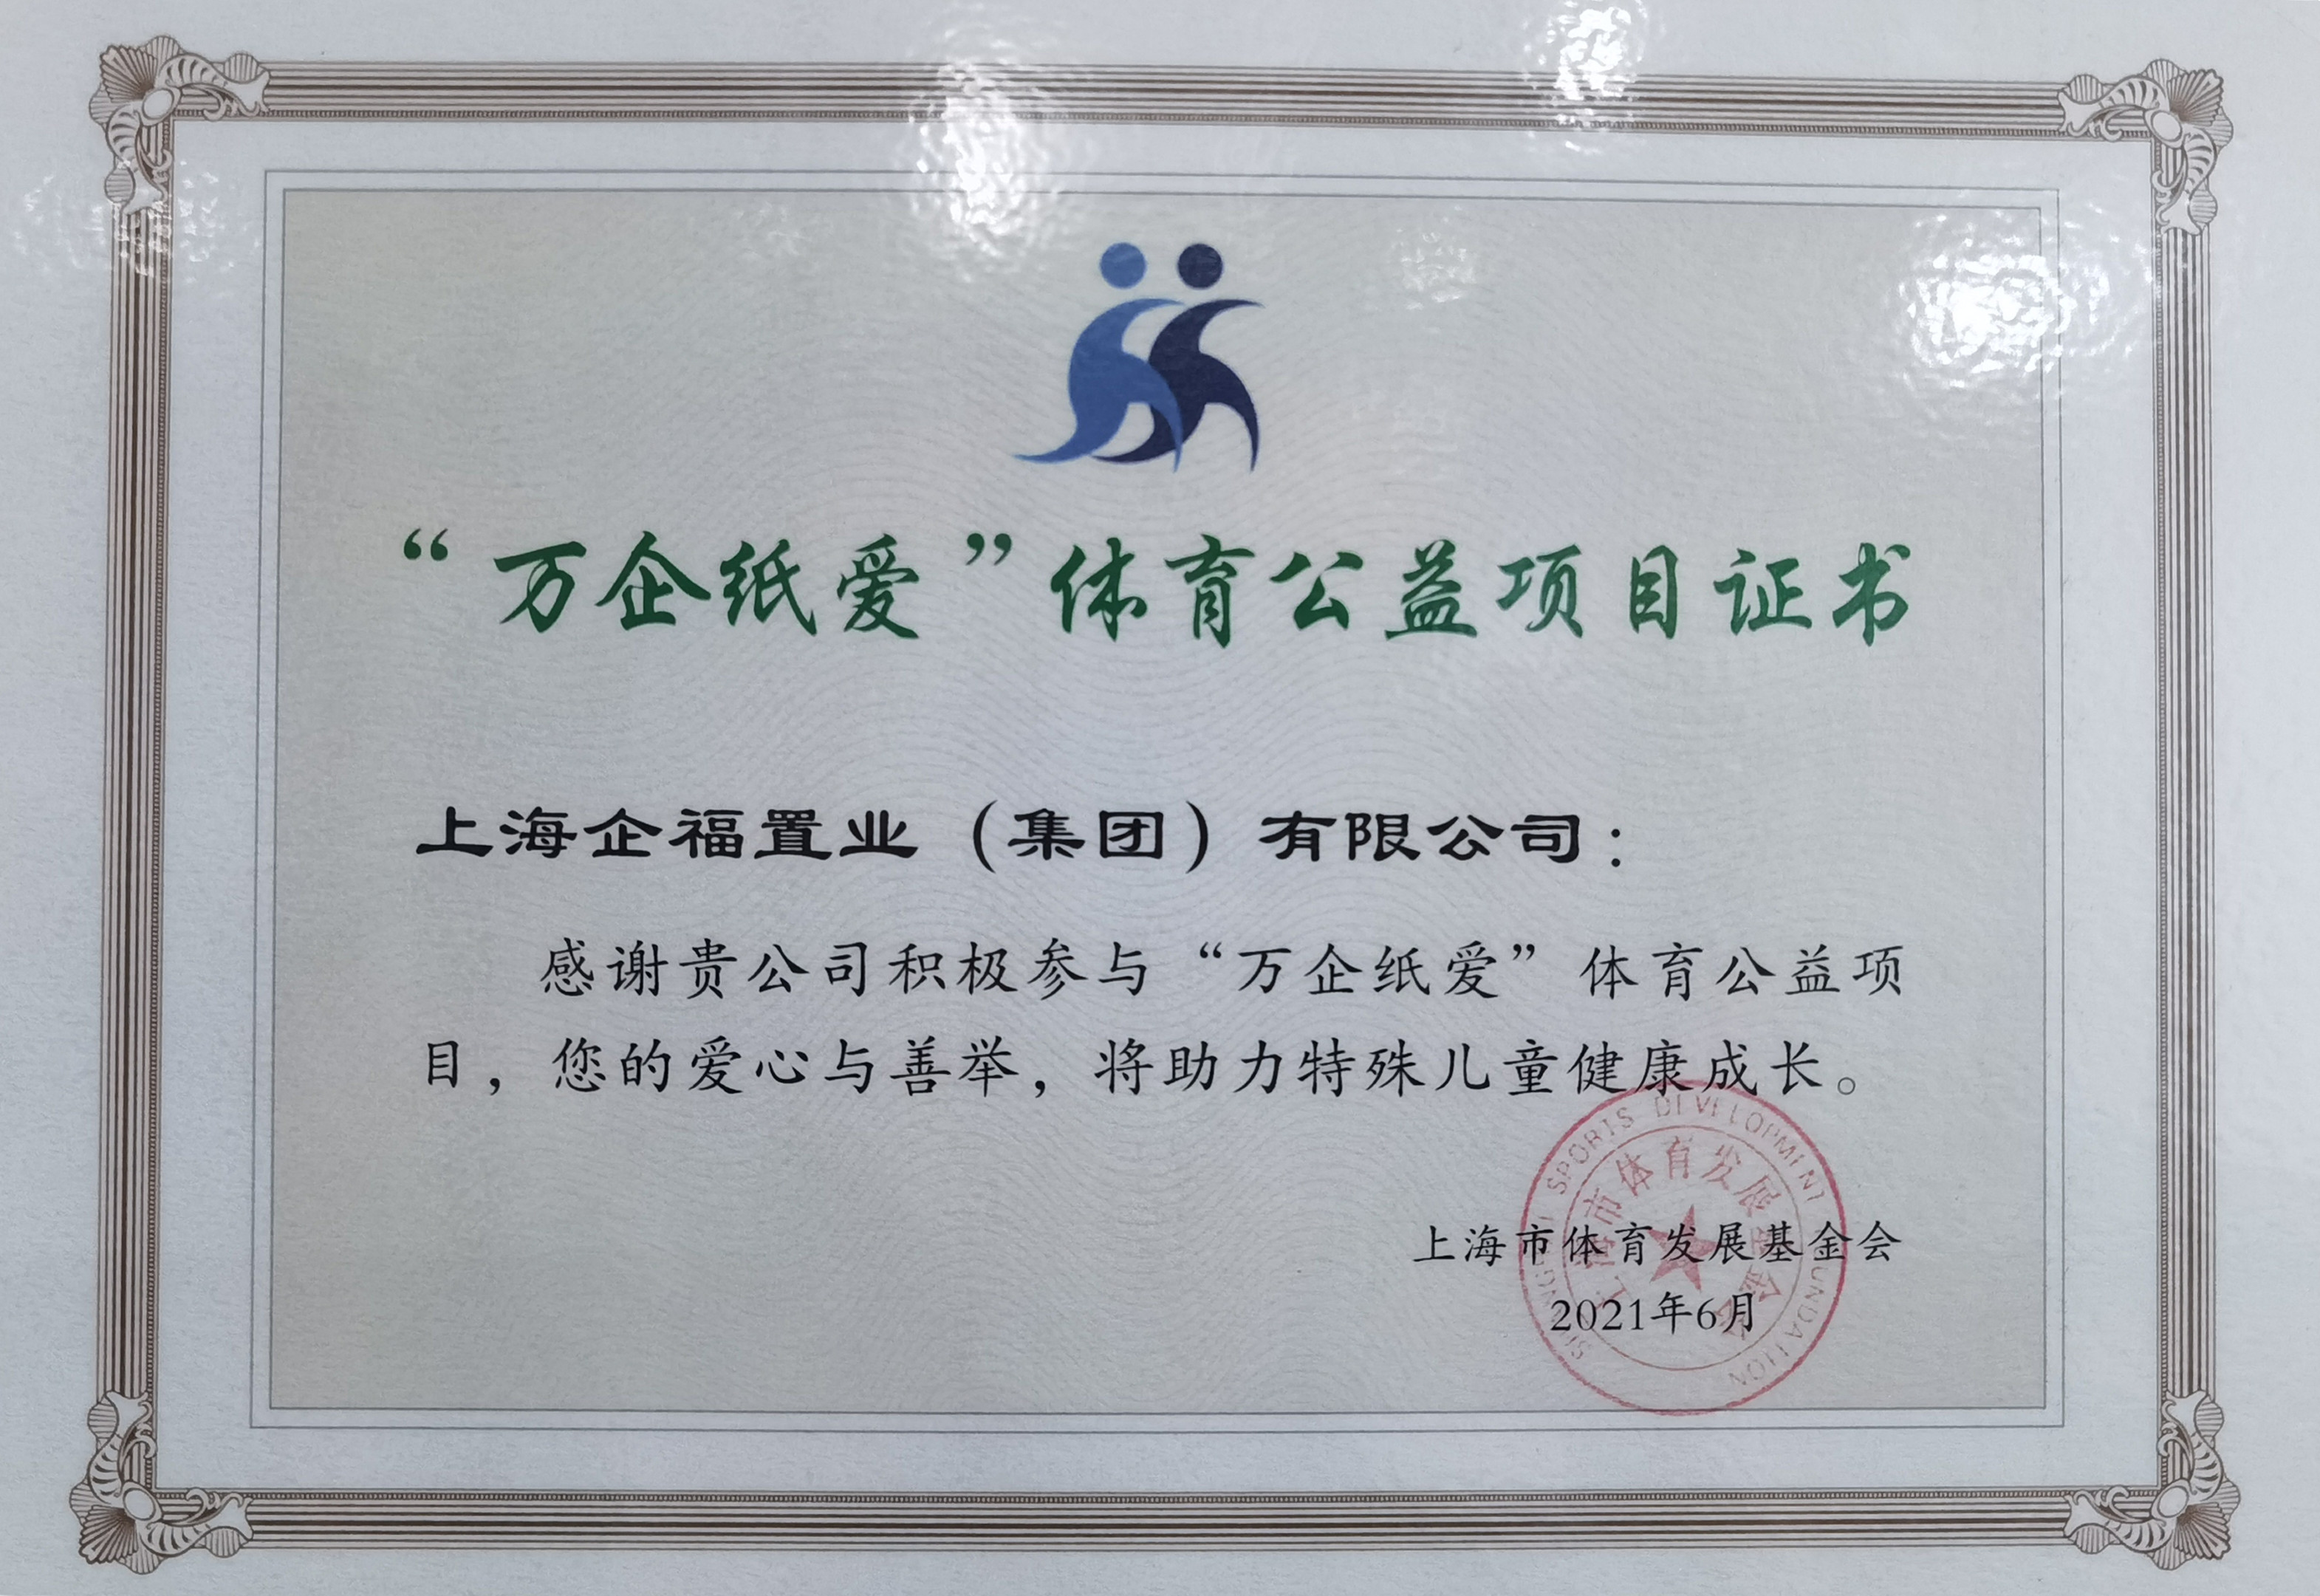 企福集团荣获上海市体育发展基金会“万企纸爱”体育公益项目证书